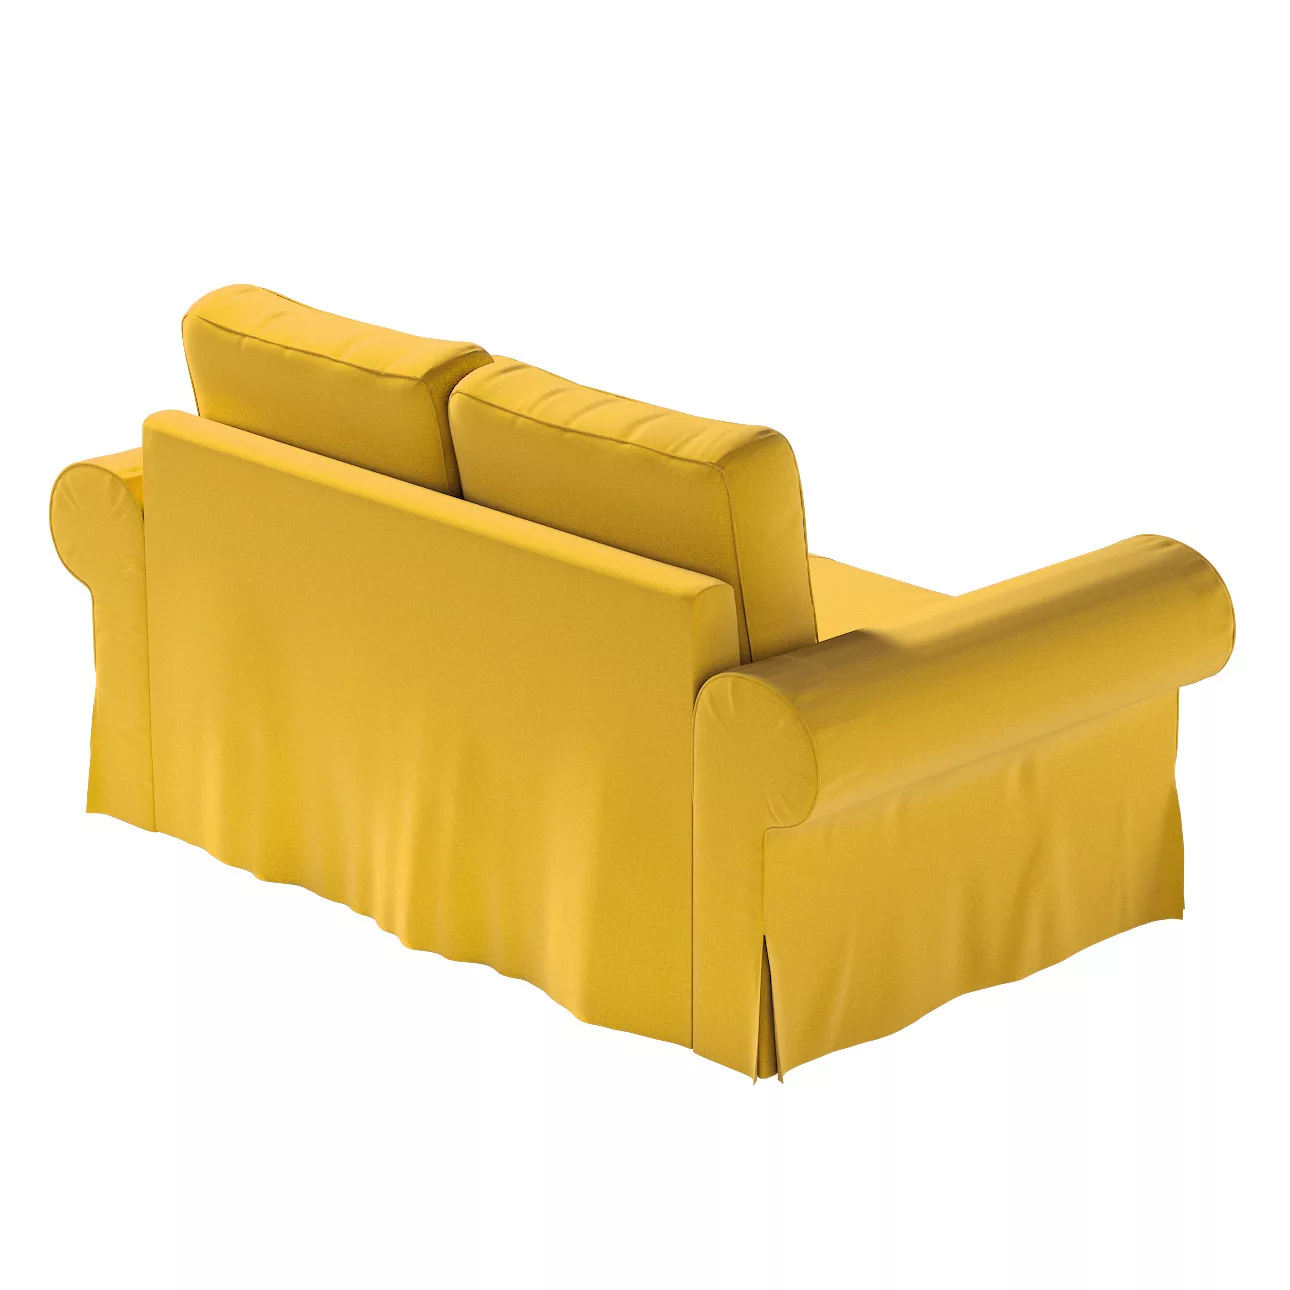 Bezug für Backabro 2-Sitzer Sofa ausklappbar, honiggelb, Bezug für Backabro günstig online kaufen